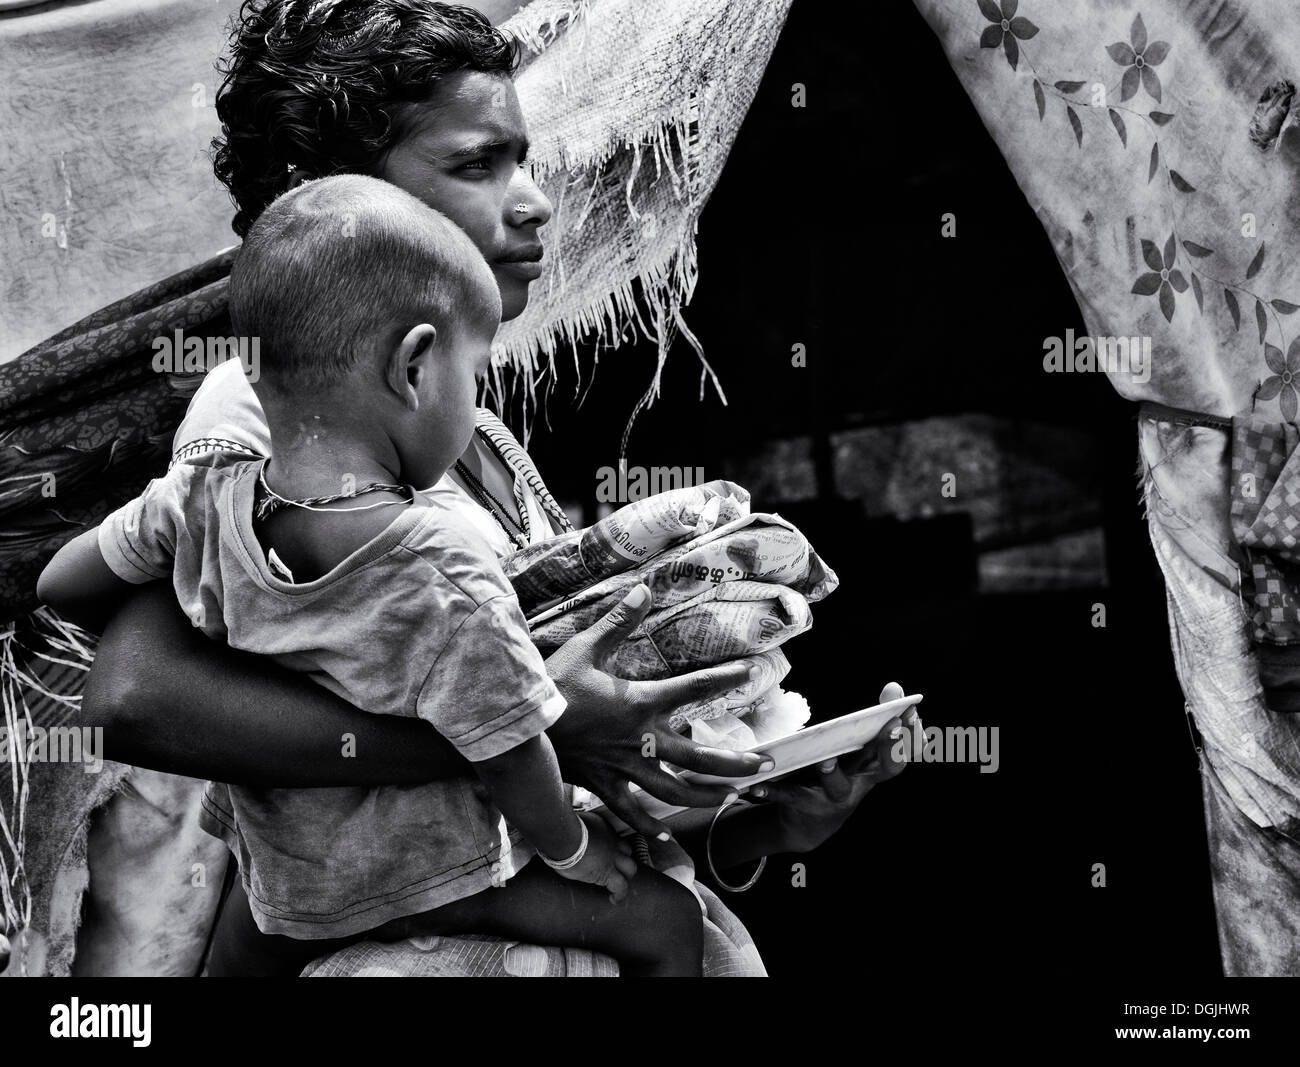 Basse caste adolescente Indienne et son fils qui reçoivent gratuitement de la nourriture à l'extérieur de son bender. L'Andhra Pradesh, Inde. Monochrome Banque D'Images